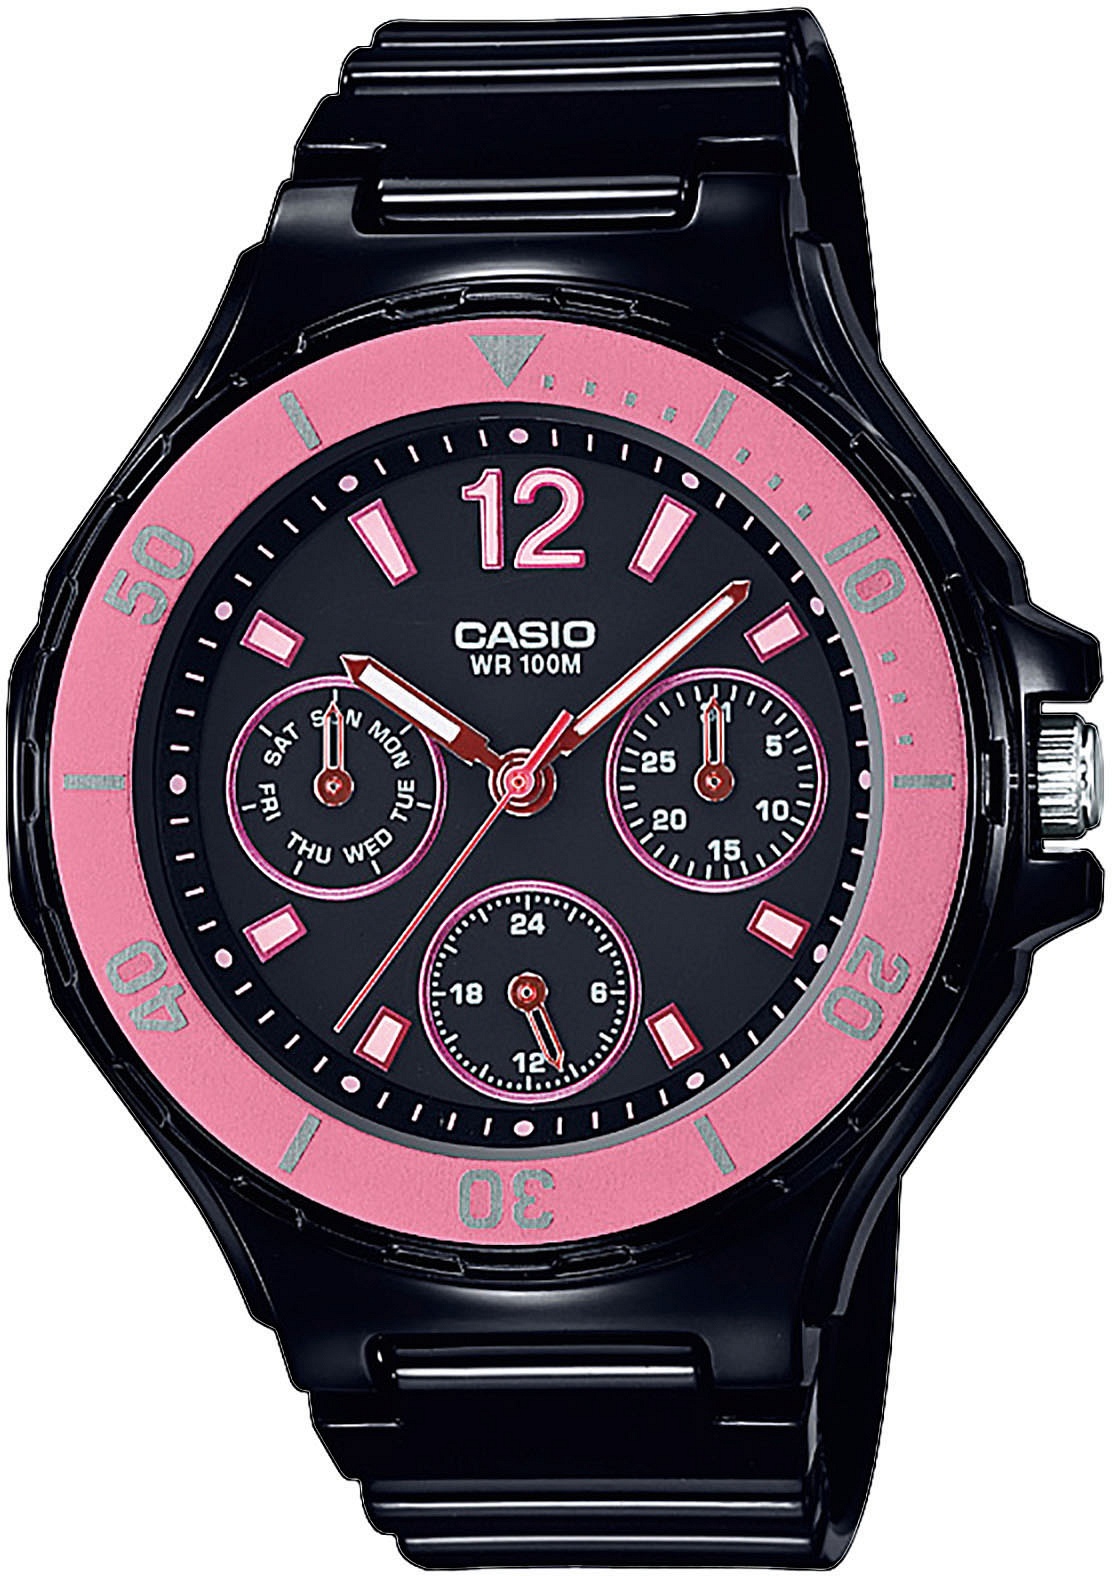 Wodoszczelne zegarki Casio – jaki wybrać? - Blog